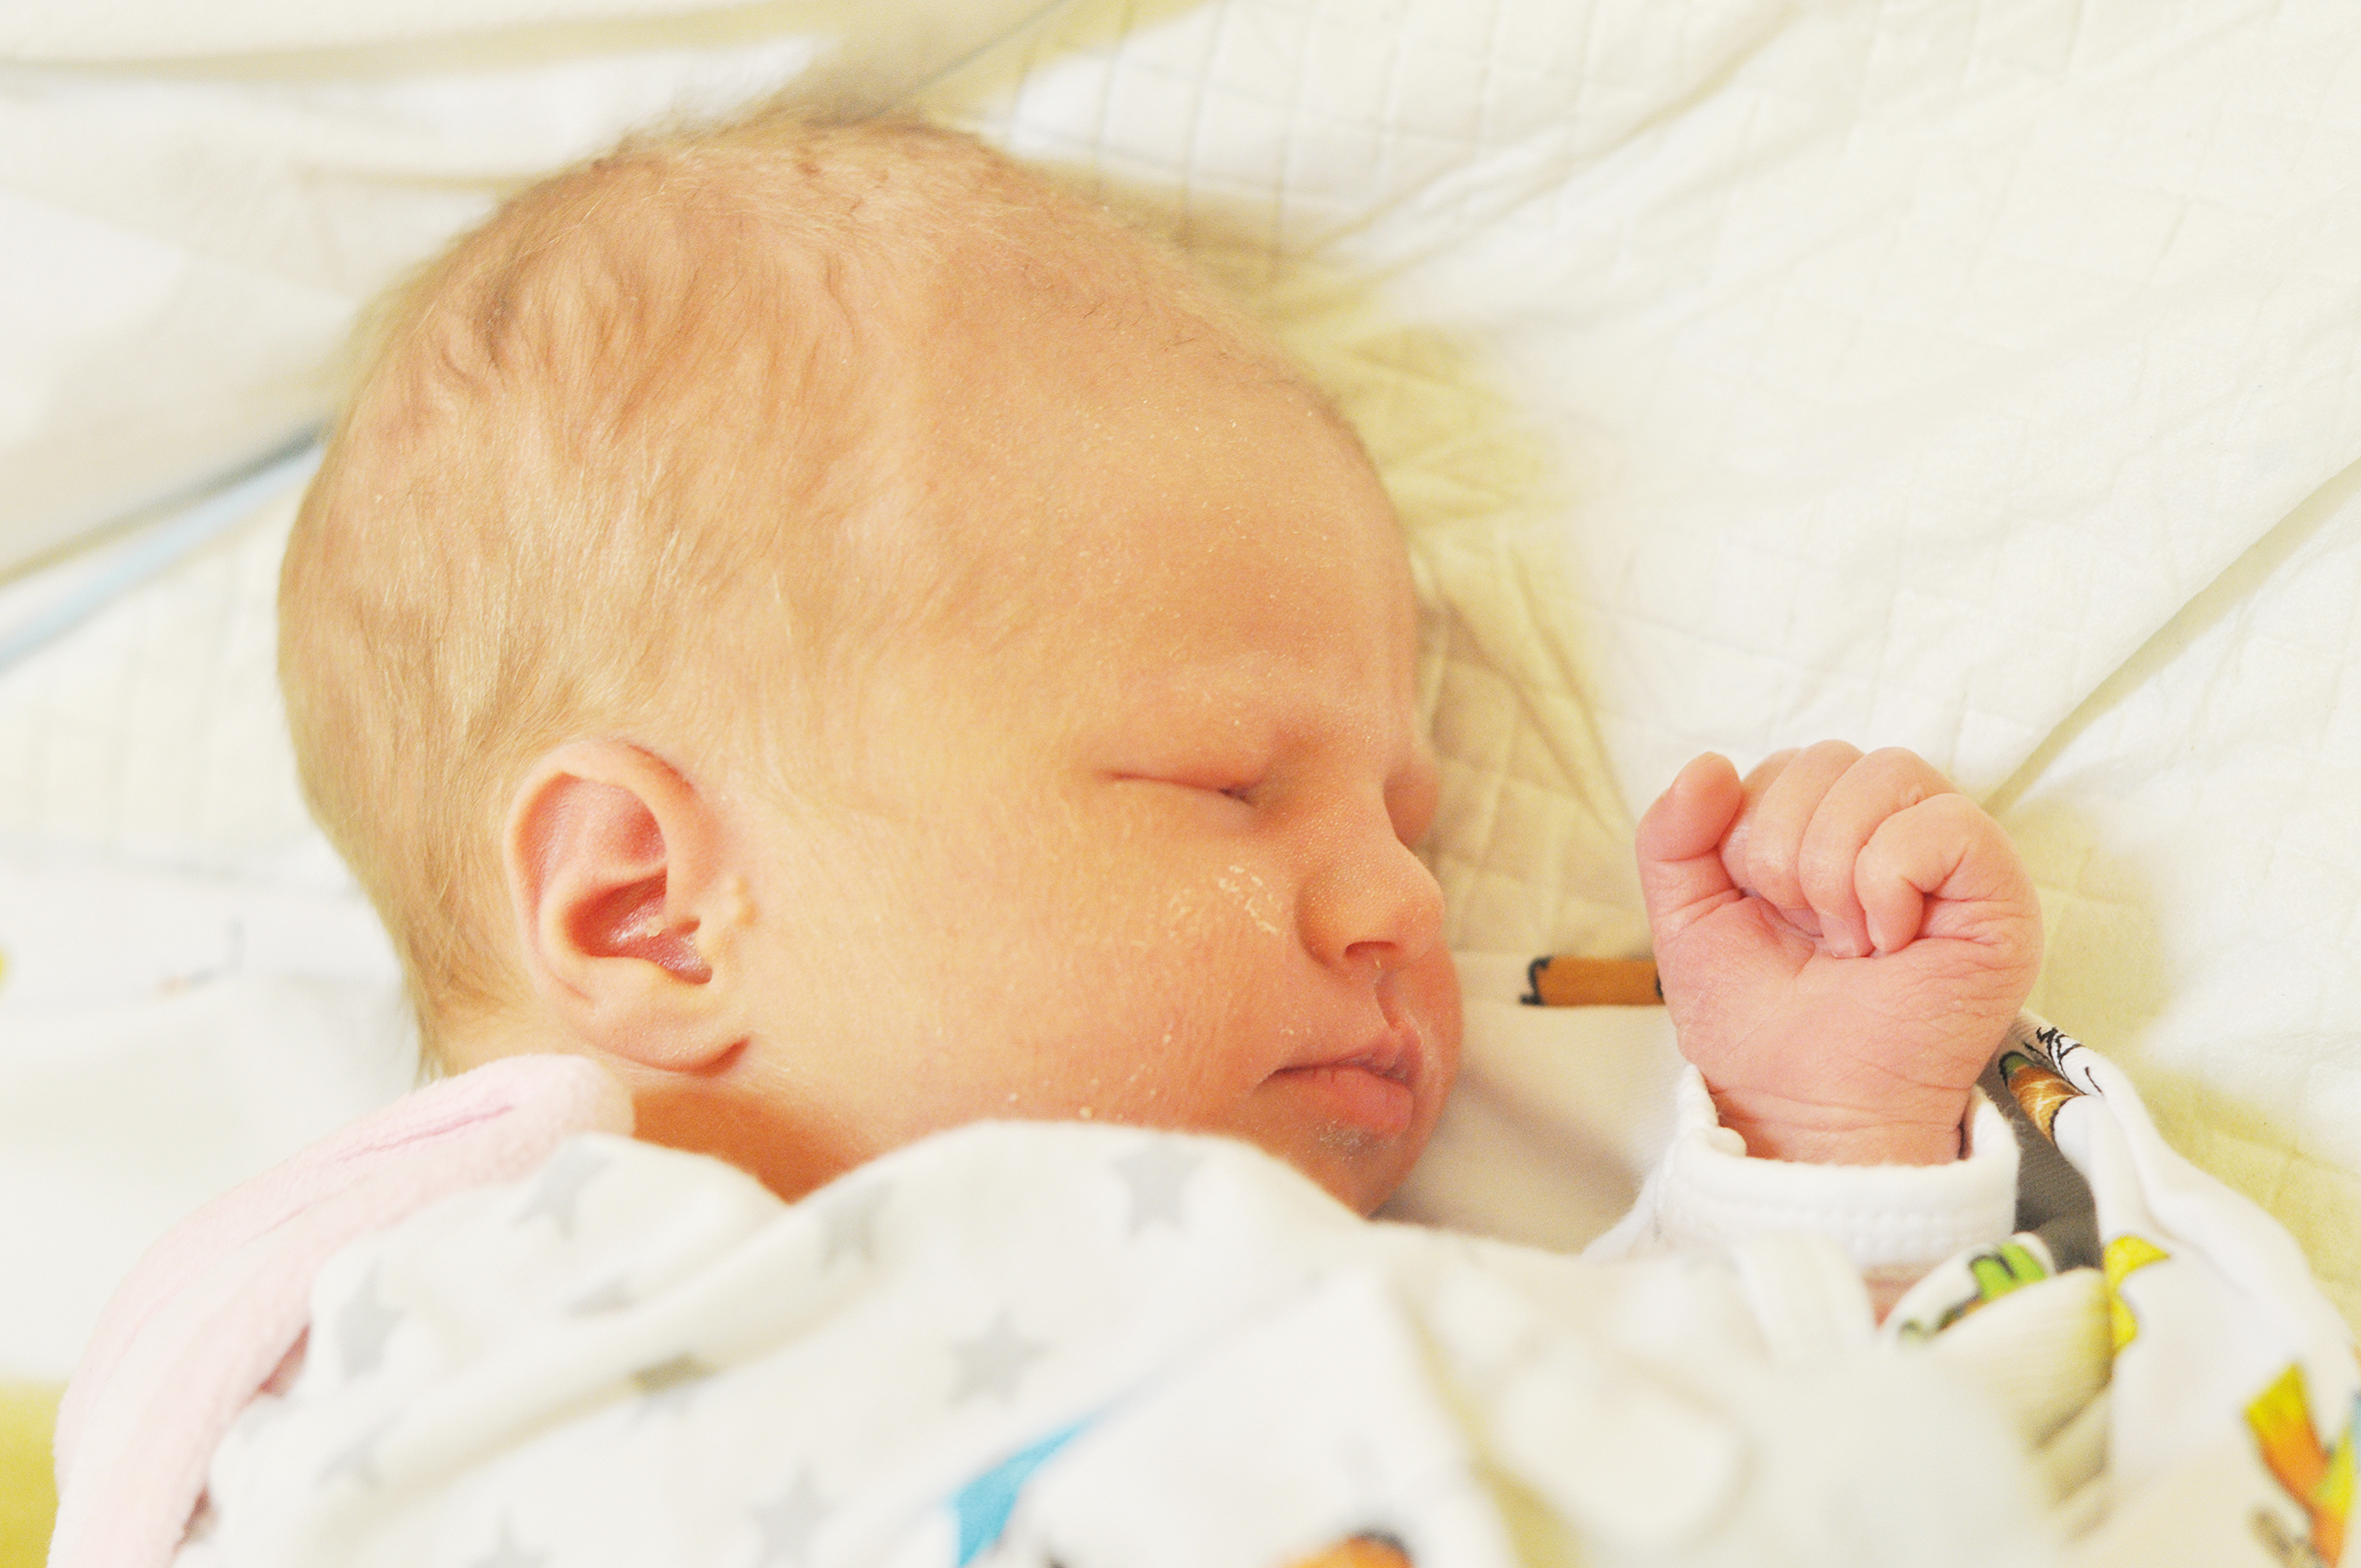 Jana Brianis jest córeczką Agaty i Kamila z Modzurowa. Narodziła się 20 października o 1.28. Ważąc 3020 g mierzyła 53 cm. W domu czeka brat Mieszko.